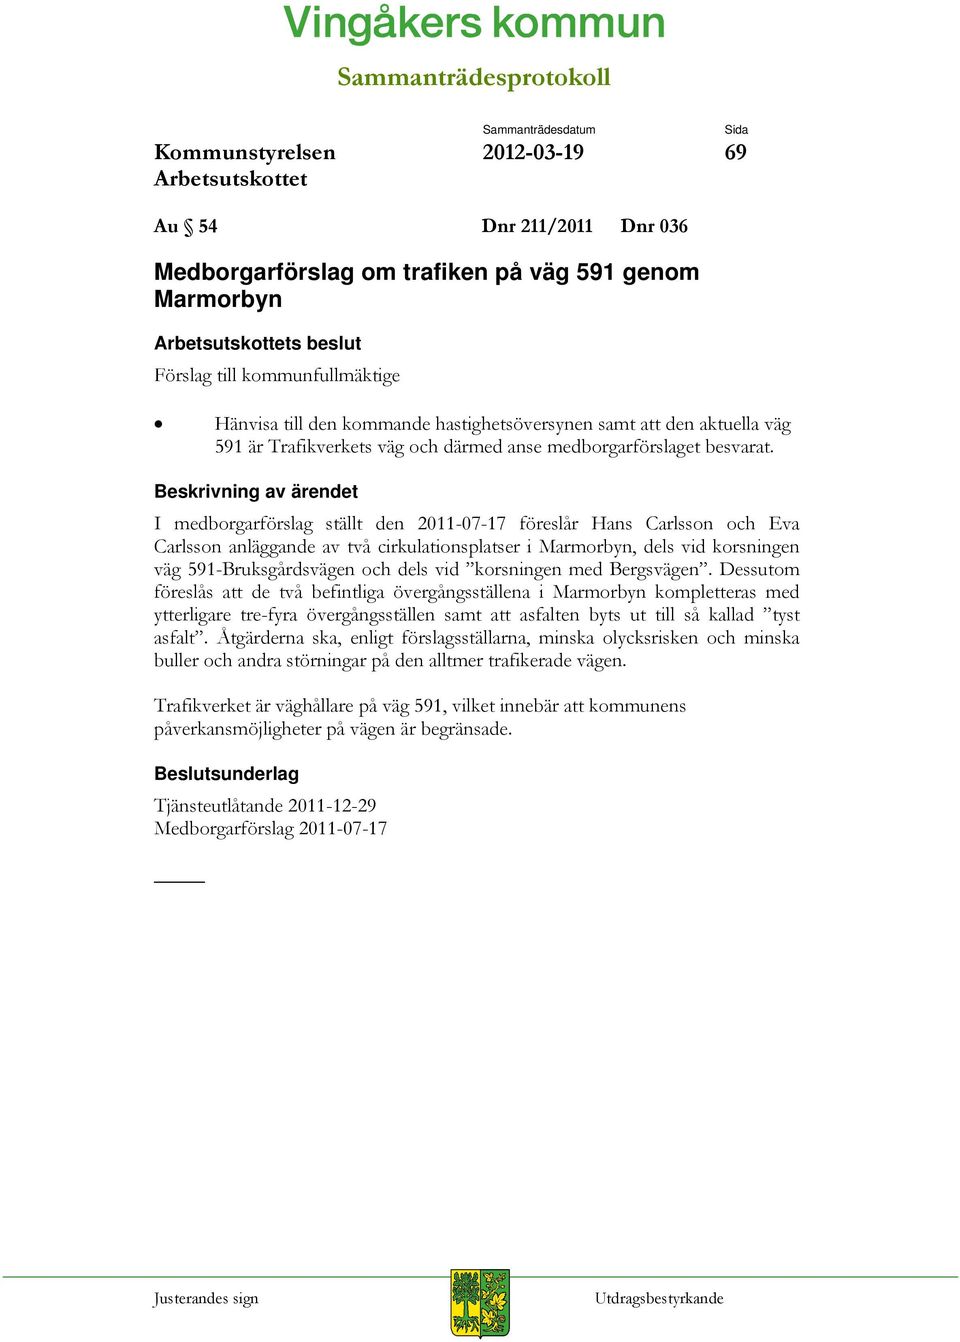 I medborgarförslag ställt den 2011-07-17 föreslår Hans Carlsson och Eva Carlsson anläggande av två cirkulationsplatser i Marmorbyn, dels vid korsningen väg 591-Bruksgårdsvägen och dels vid korsningen